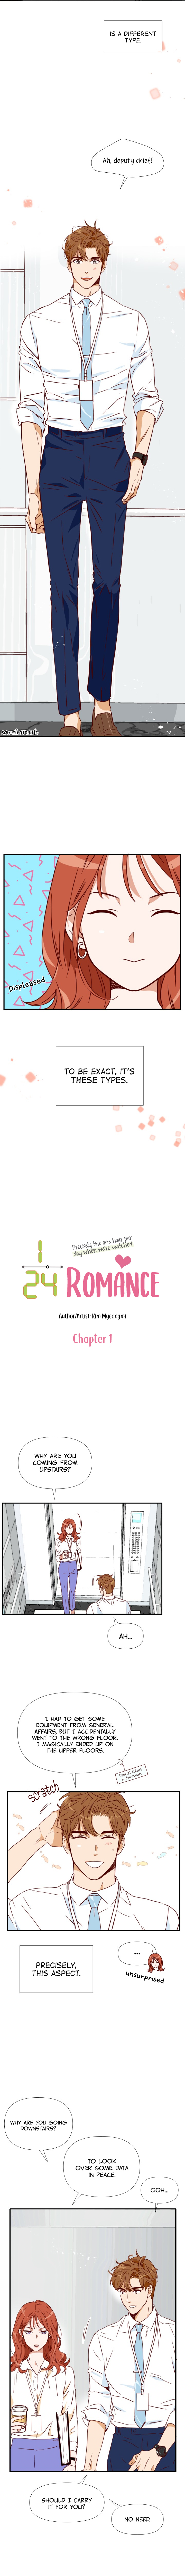 1/24 Romance Ch. 1